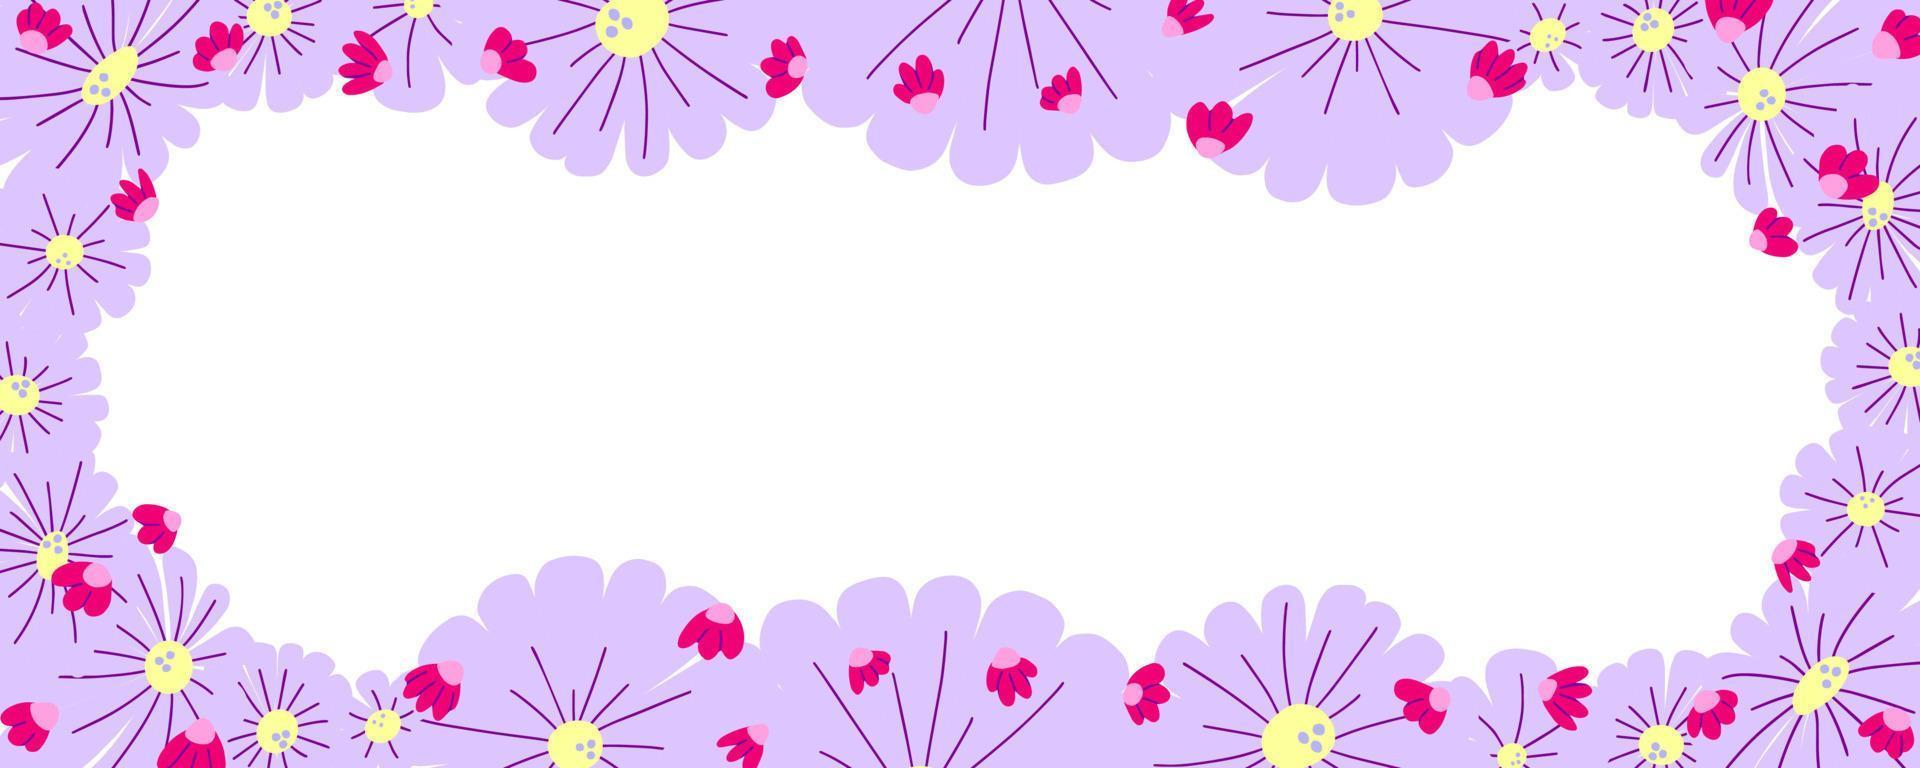 schattig hand- getrokken kader van bloemen. decoratief element met lavendel bloemen voor het drukken uitnodigingen, brieven of groet kaarten. vector